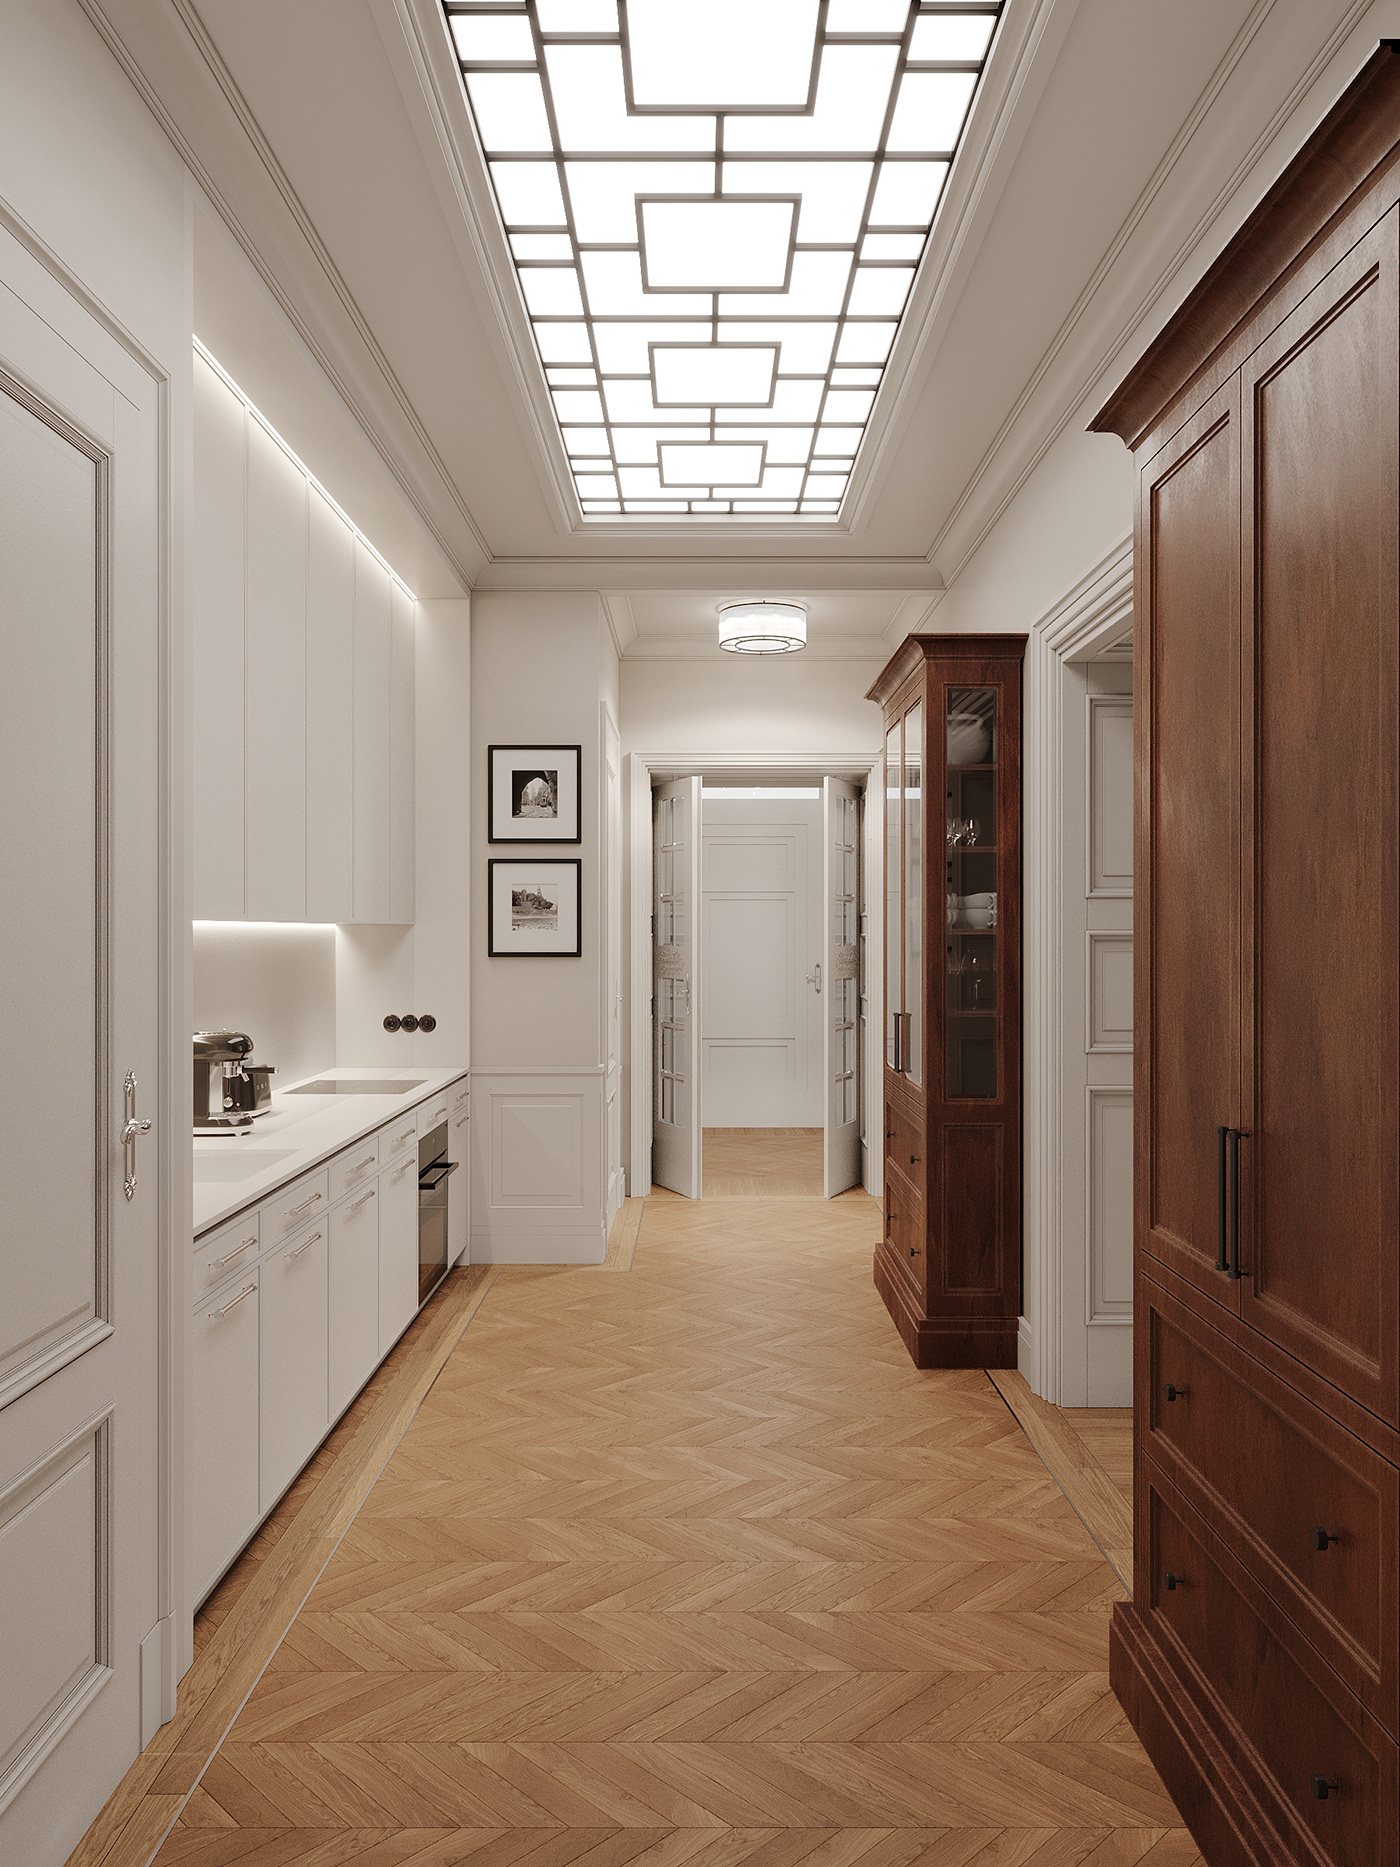 3D 3ds max architecture CGI corona house Interior interior design  Render visualization